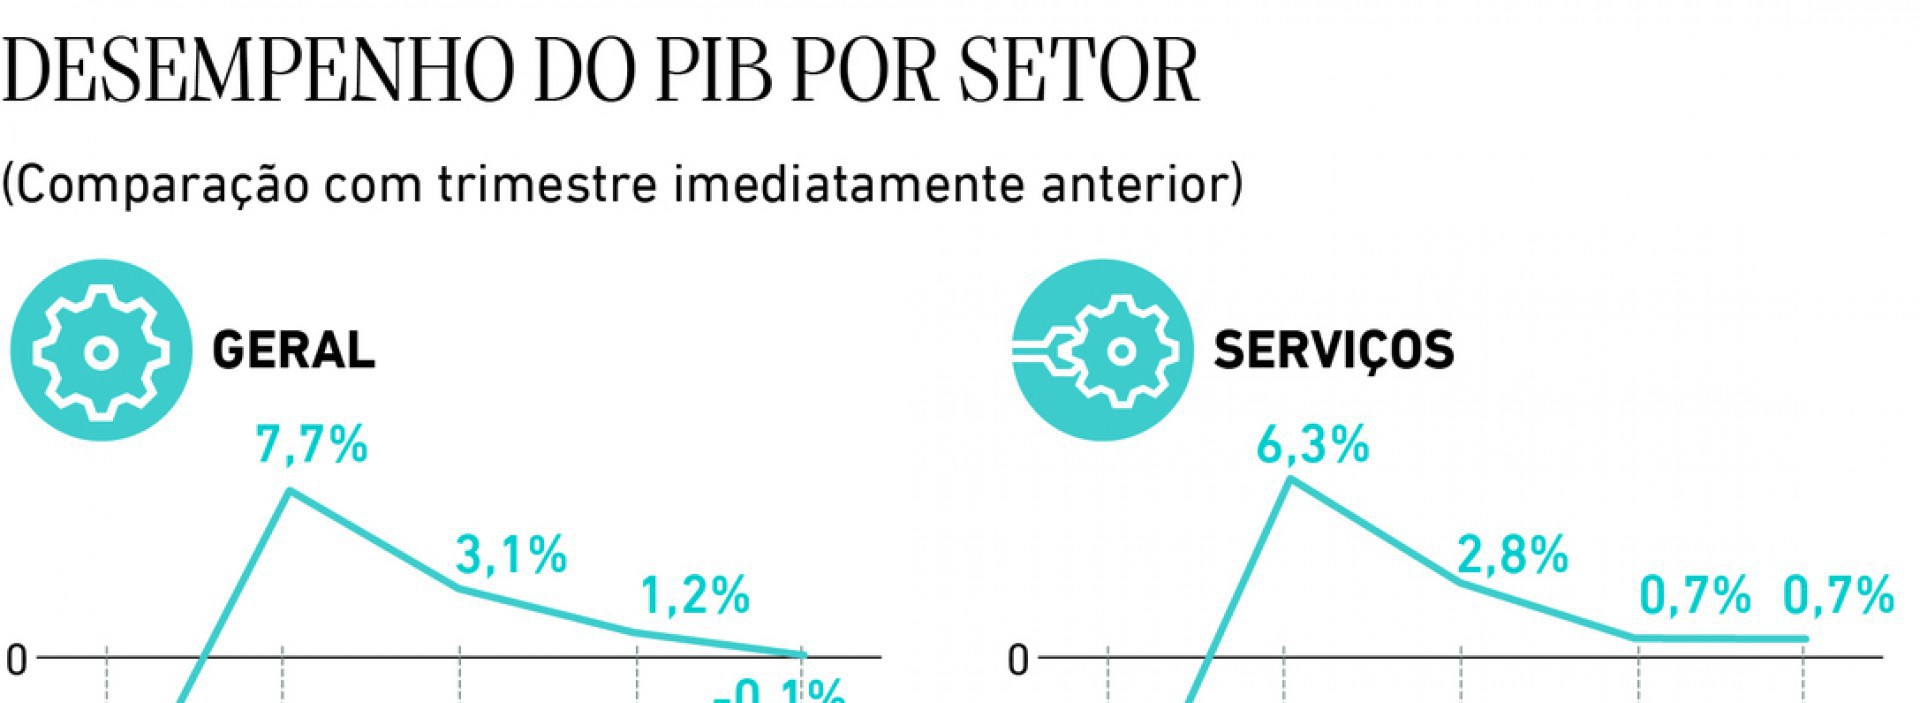 Desempenho do PIB por setor (Foto: Desempenho do PIB por setor)